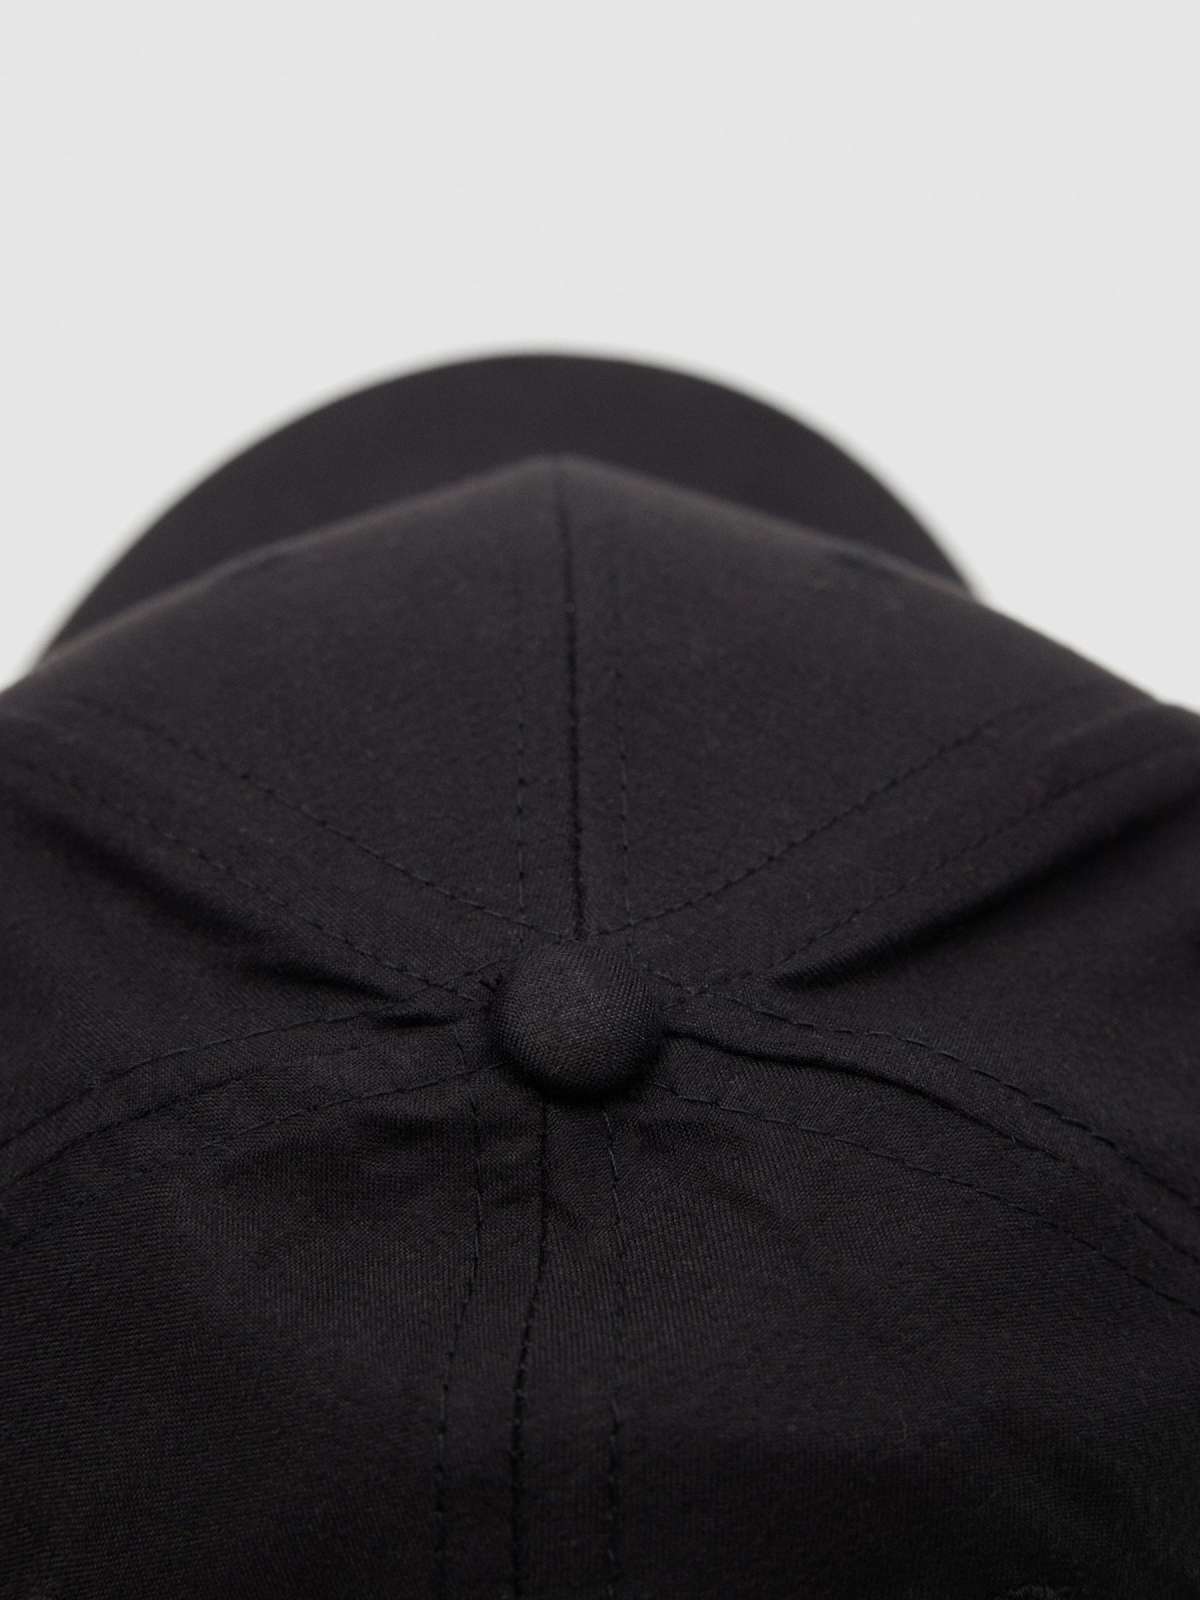 Basic cap IN black detail view